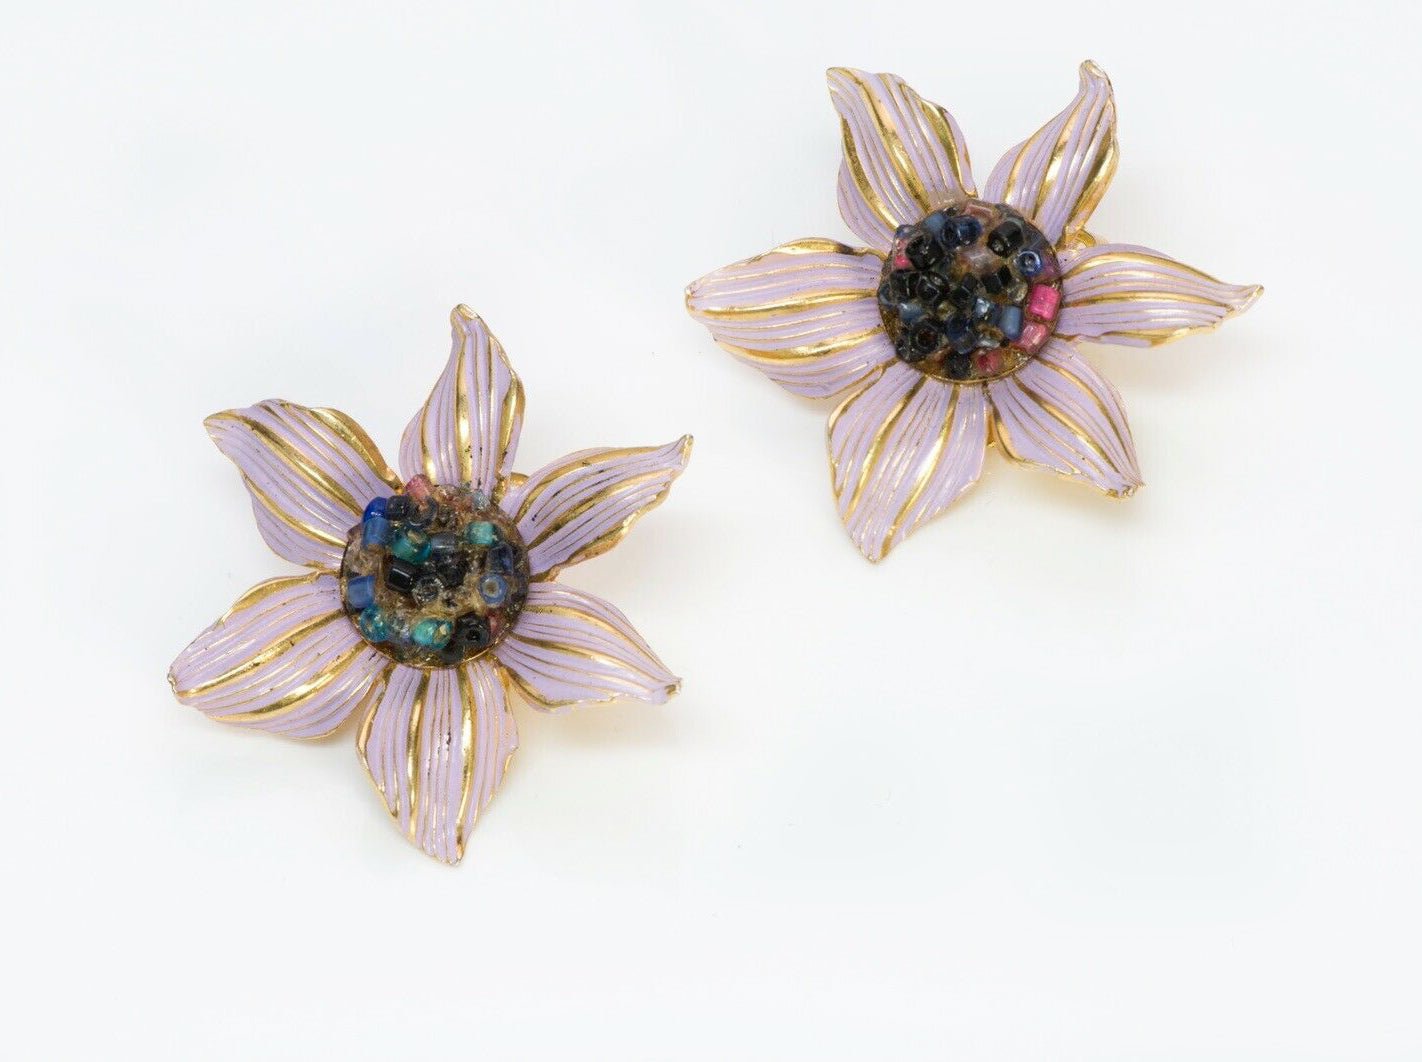 Christian DIOR 1966-1967 Henkel & Grosse Enamel Beads Flower Brooch Earrings Set - DSF Antique Jewelry